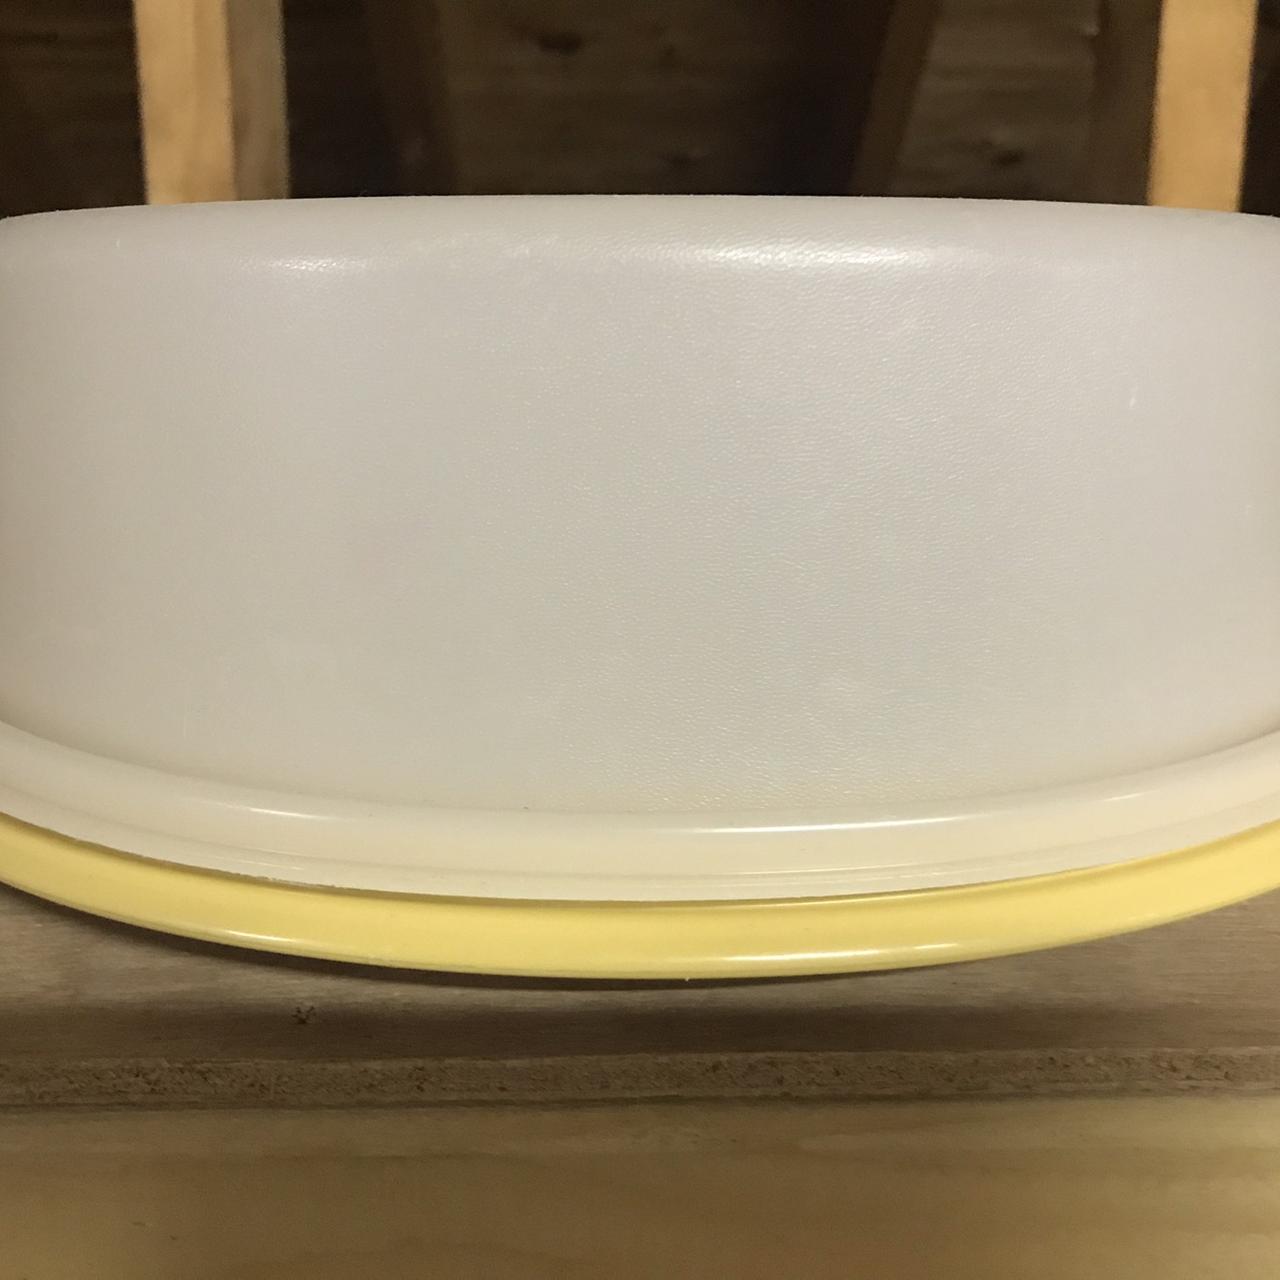 Vintage Tupperware Canister. Large size. Good - Depop